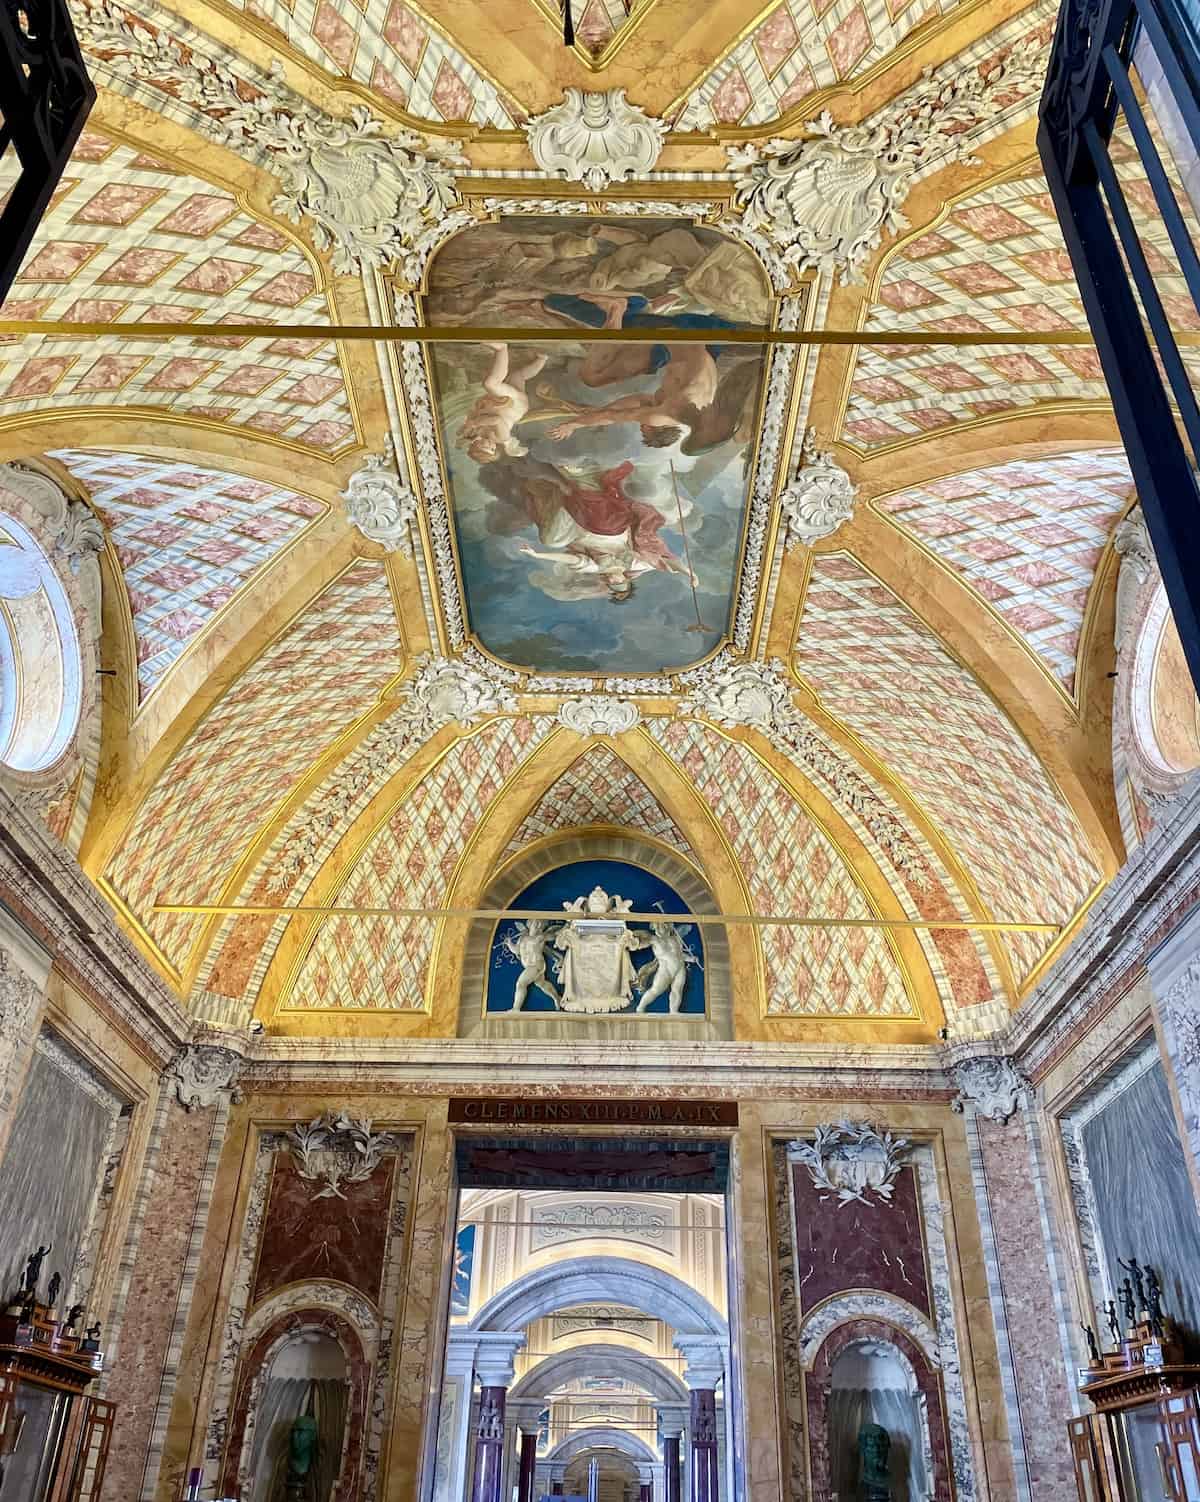 Decorative ceiling at Vatican.